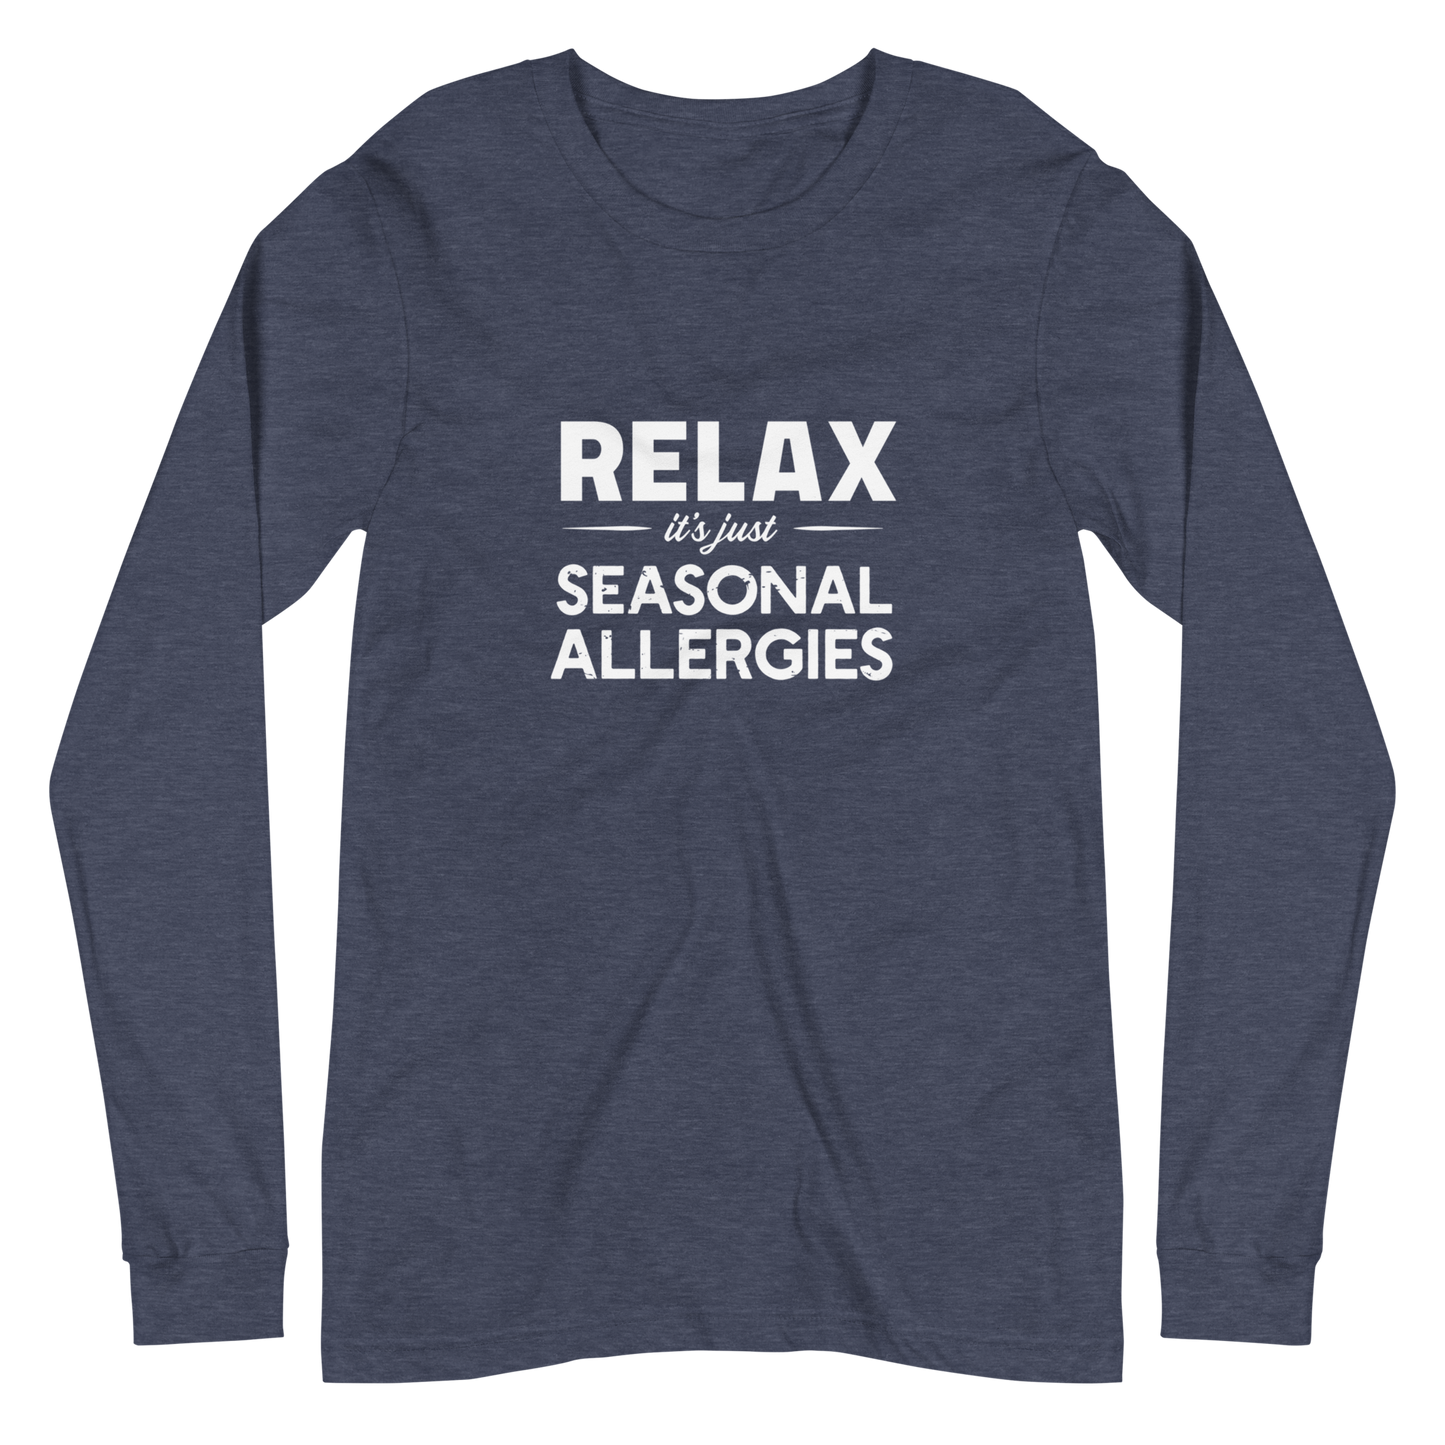 Seasonal Allergies - Bella + Canvas Long Sleeve Tee